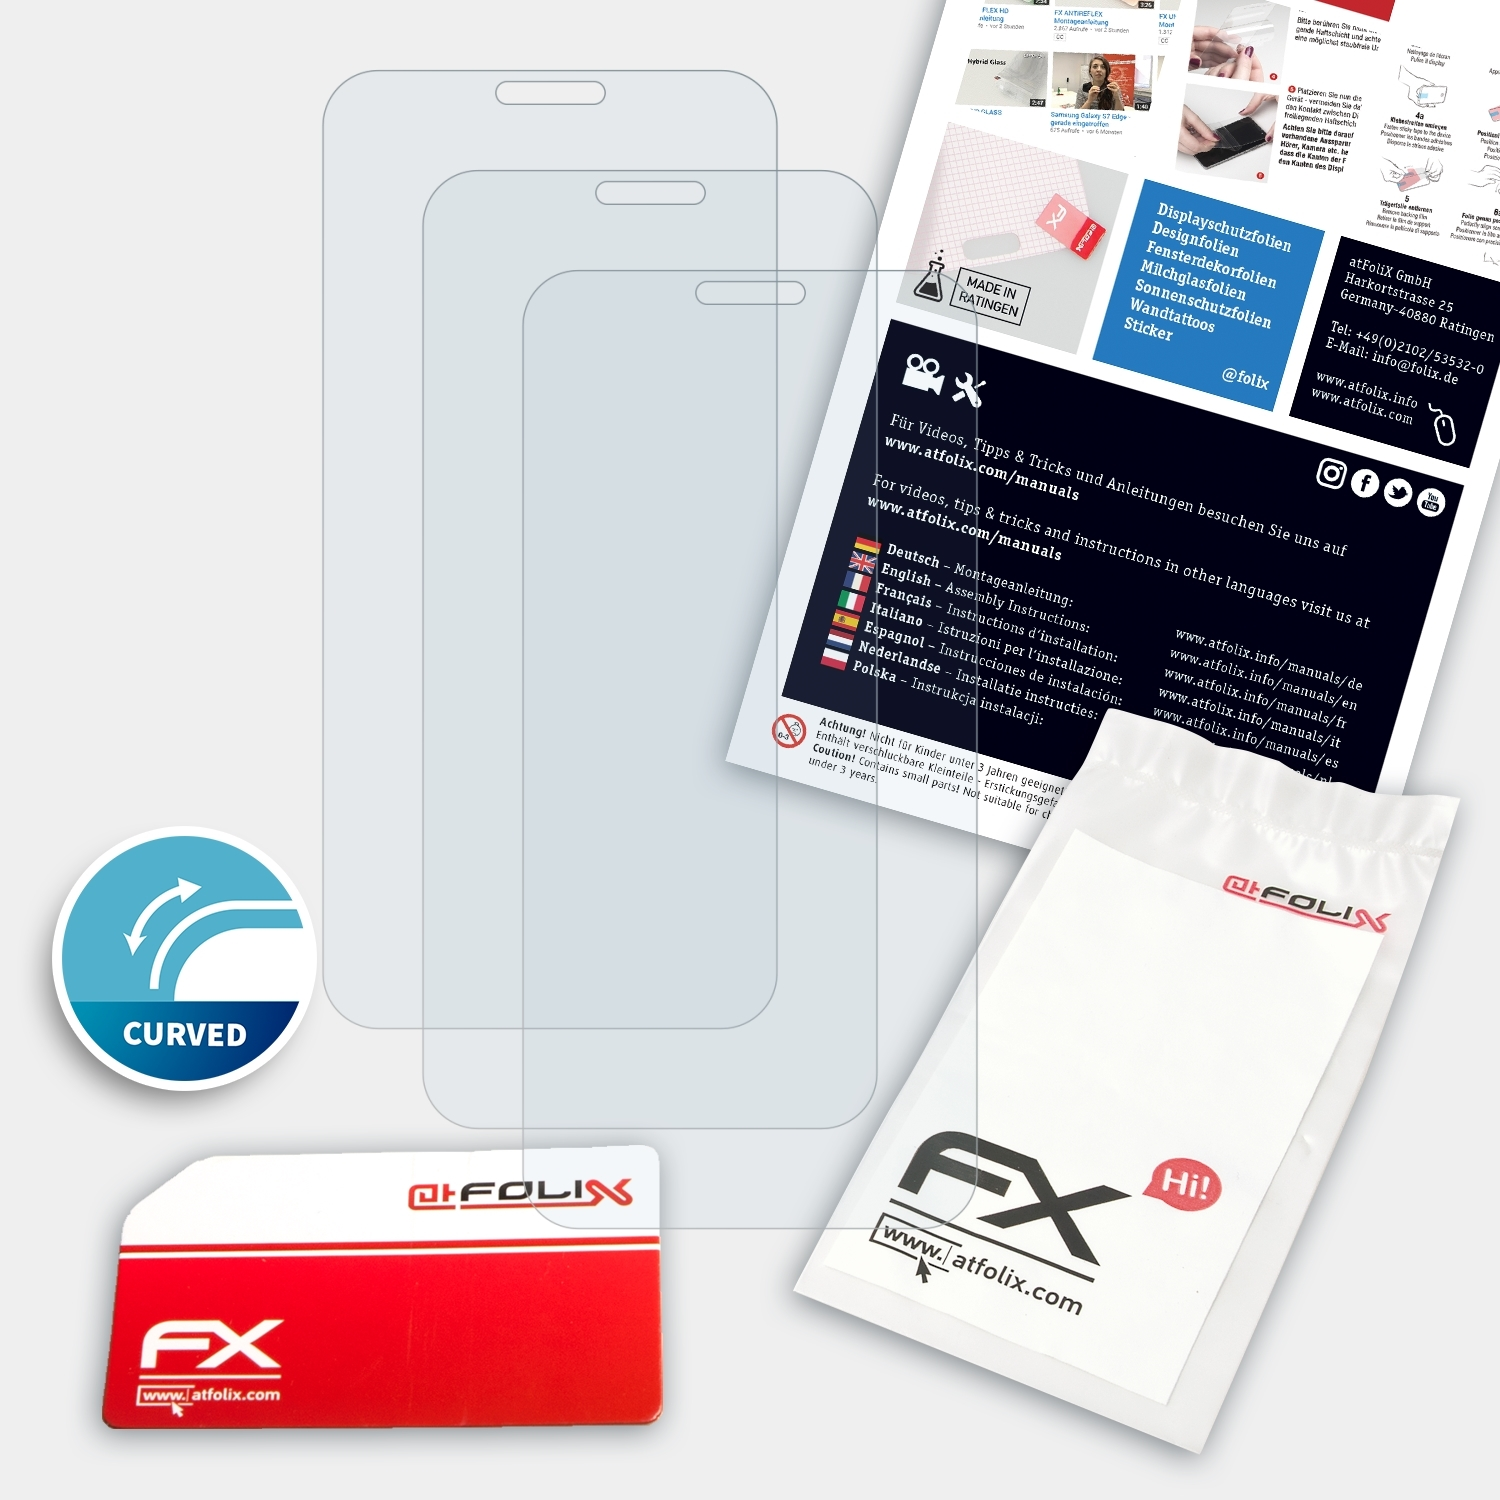 ATFOLIX FX-ActiFleX Displayschutz(für ThinQ) LG V50S 3x